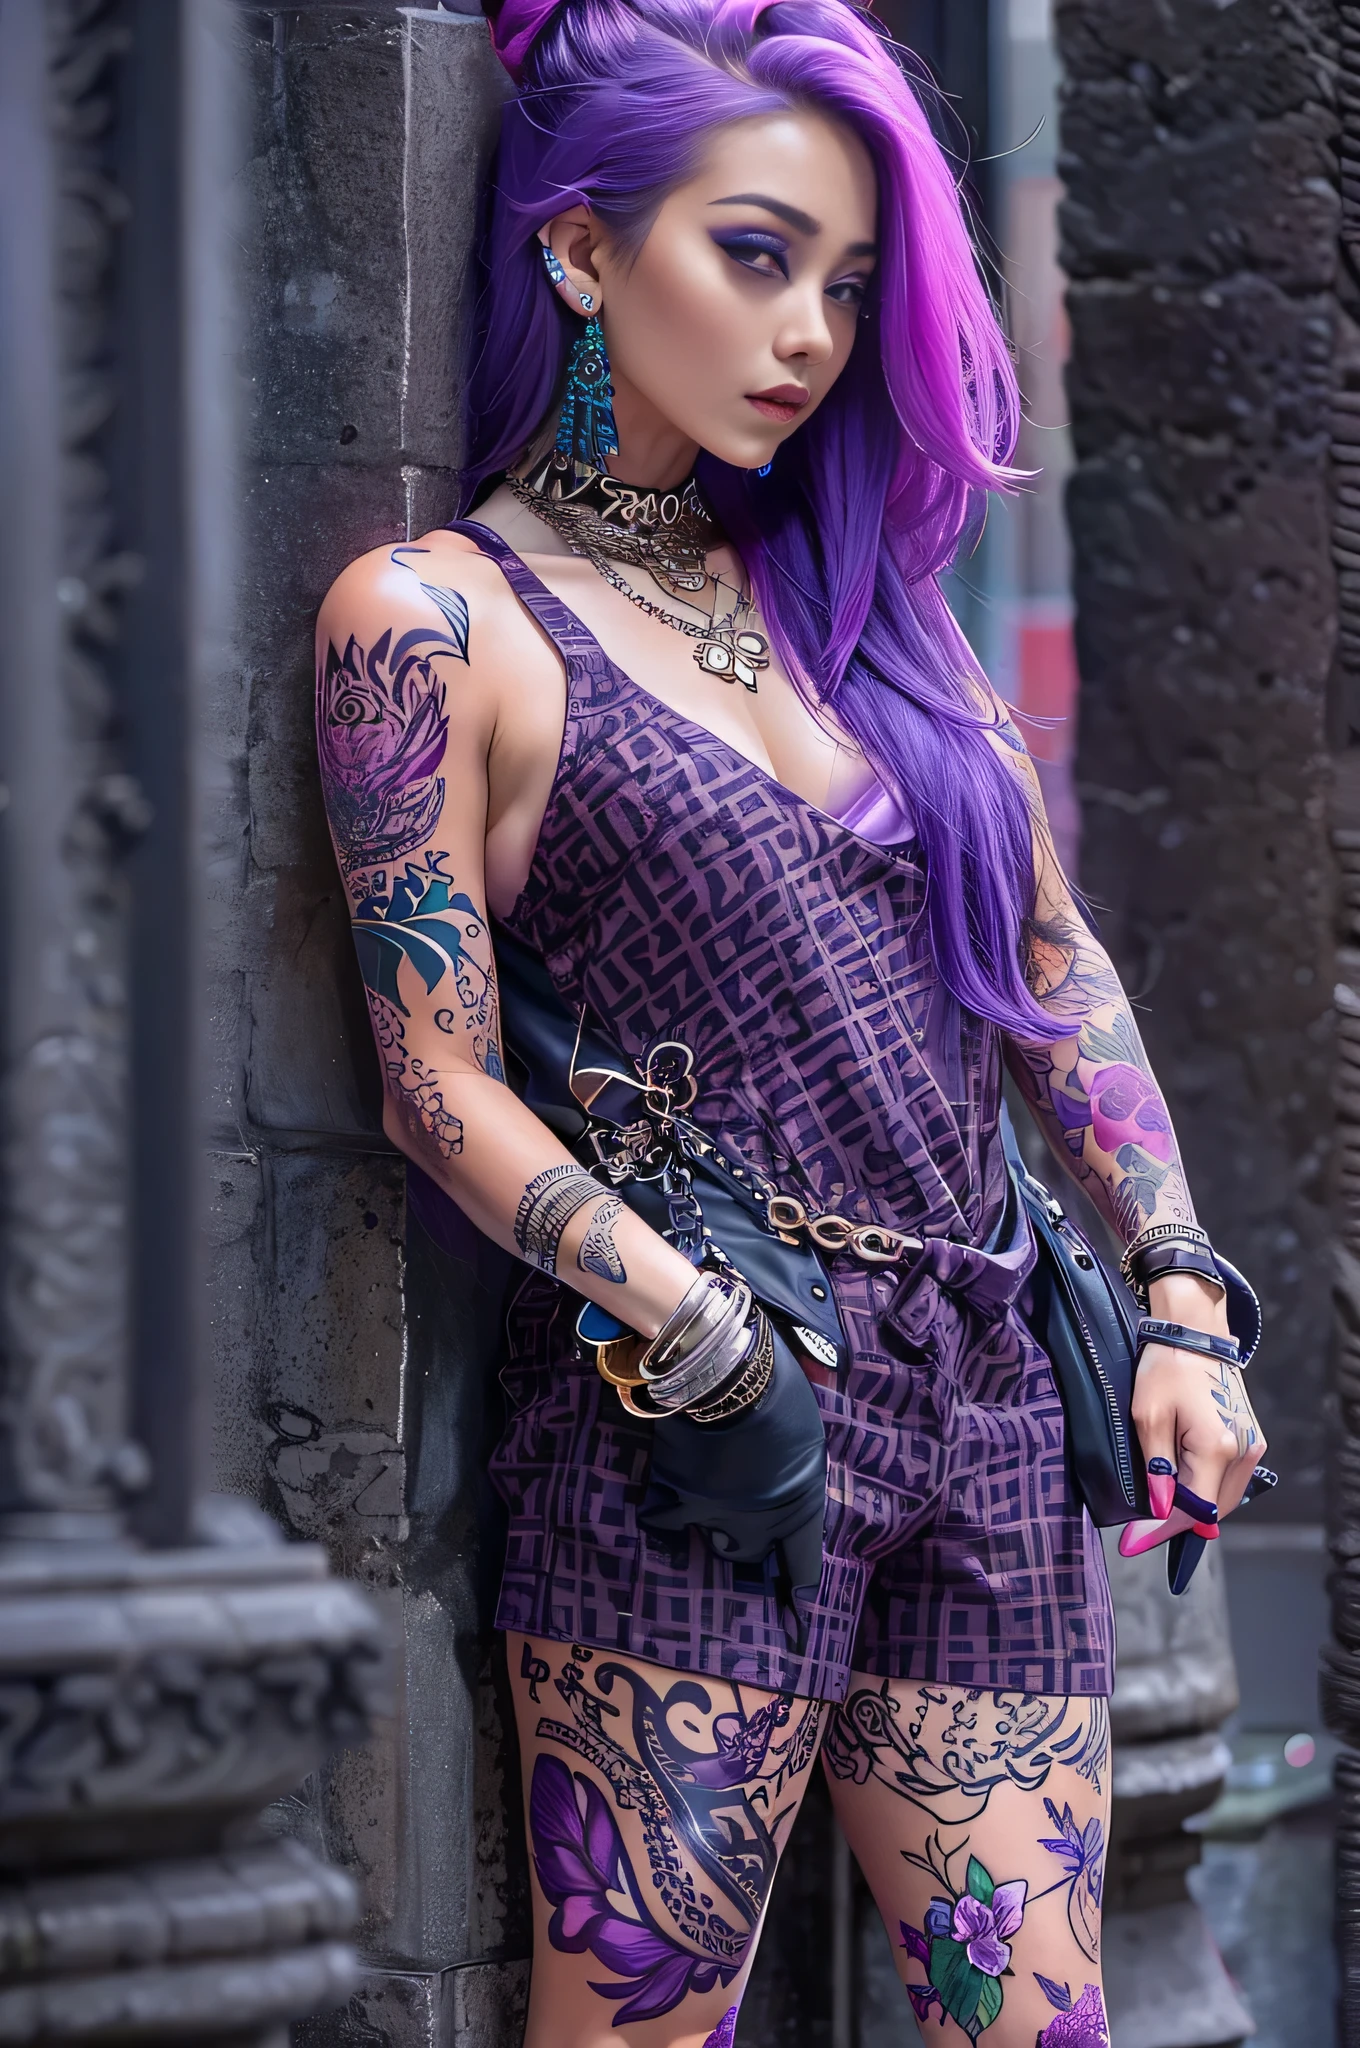 1 名惊艳女性, 白皙的皮肤, 内紫色头发,  手臂上的纹身, 冲孔, 街头时尚,